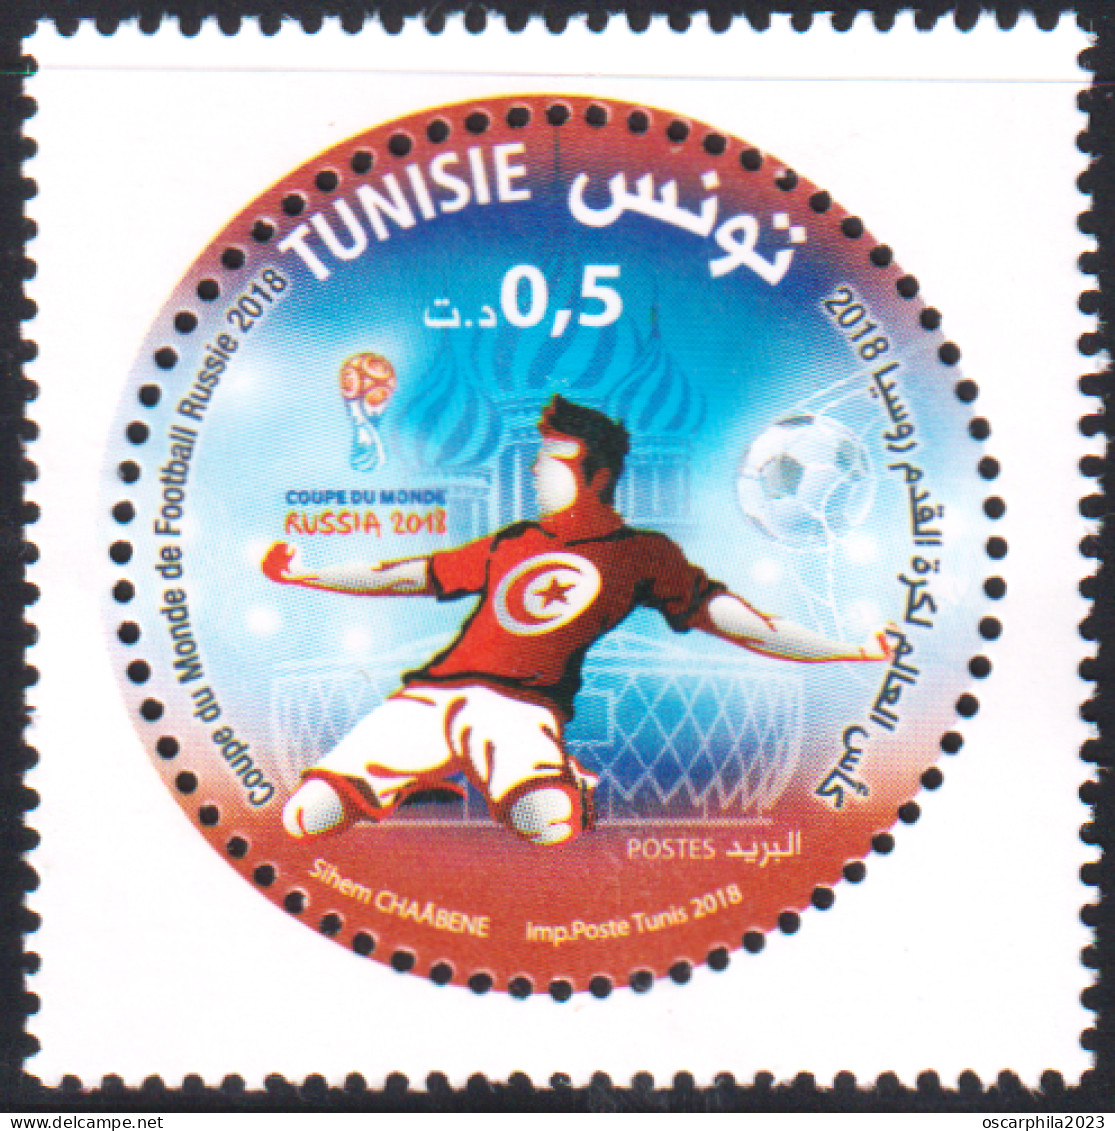 2018 - Tunisie  - Coupe Du Monde De Football Russie 2018  - 1V - MNH*** - Tunisia (1956-...)